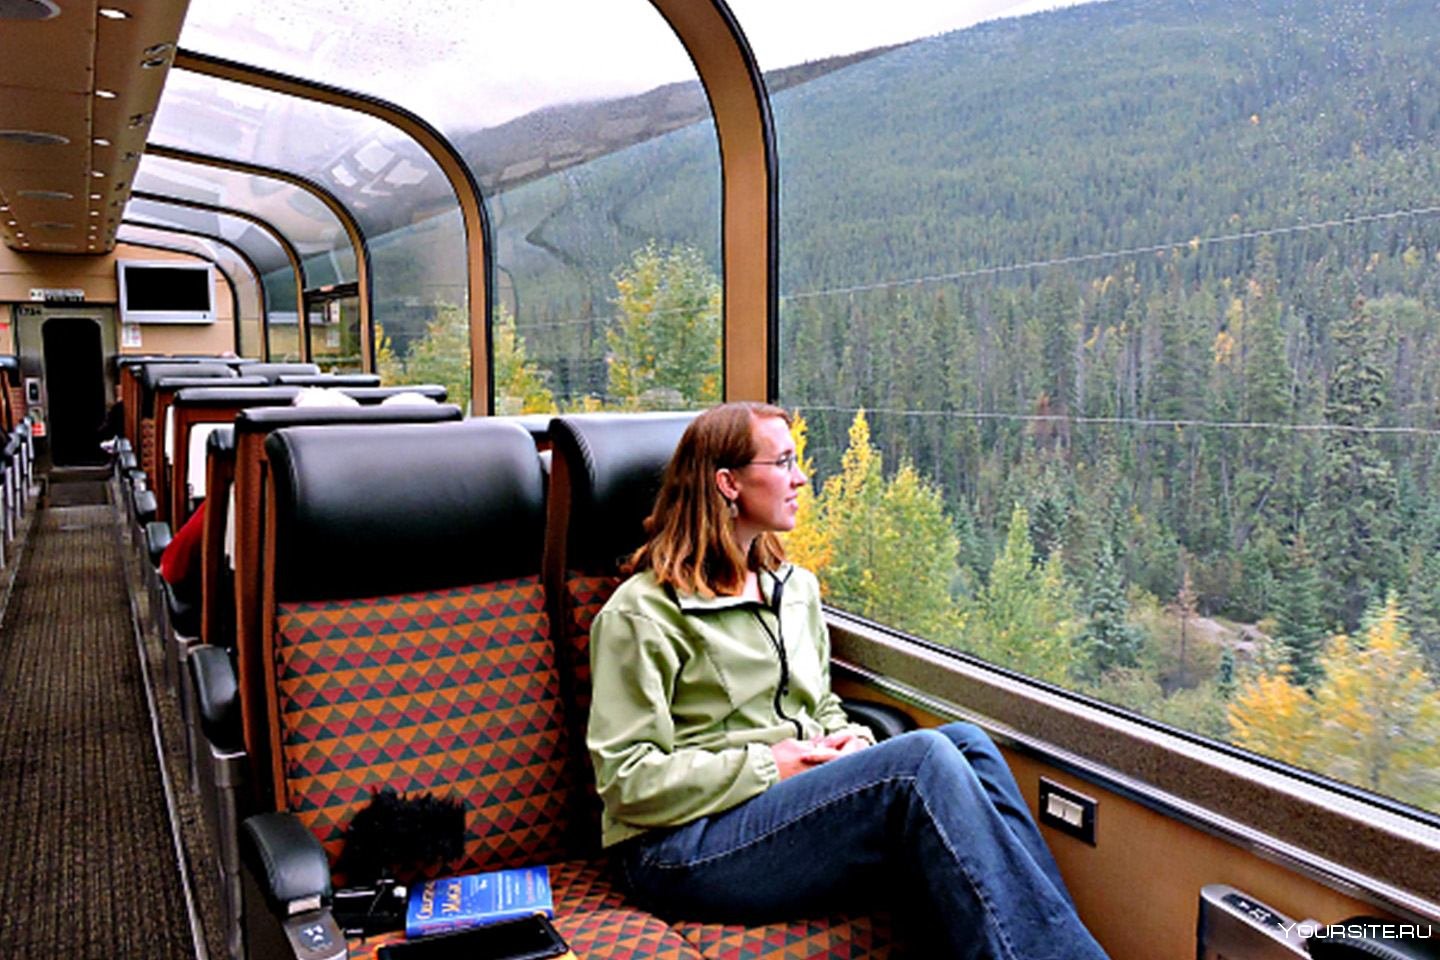 Поездка в вагоне поезда. Путешествие на поезде. Туристический поезд. Туристско экскурсионные поезда. Транспорт для путешествий.